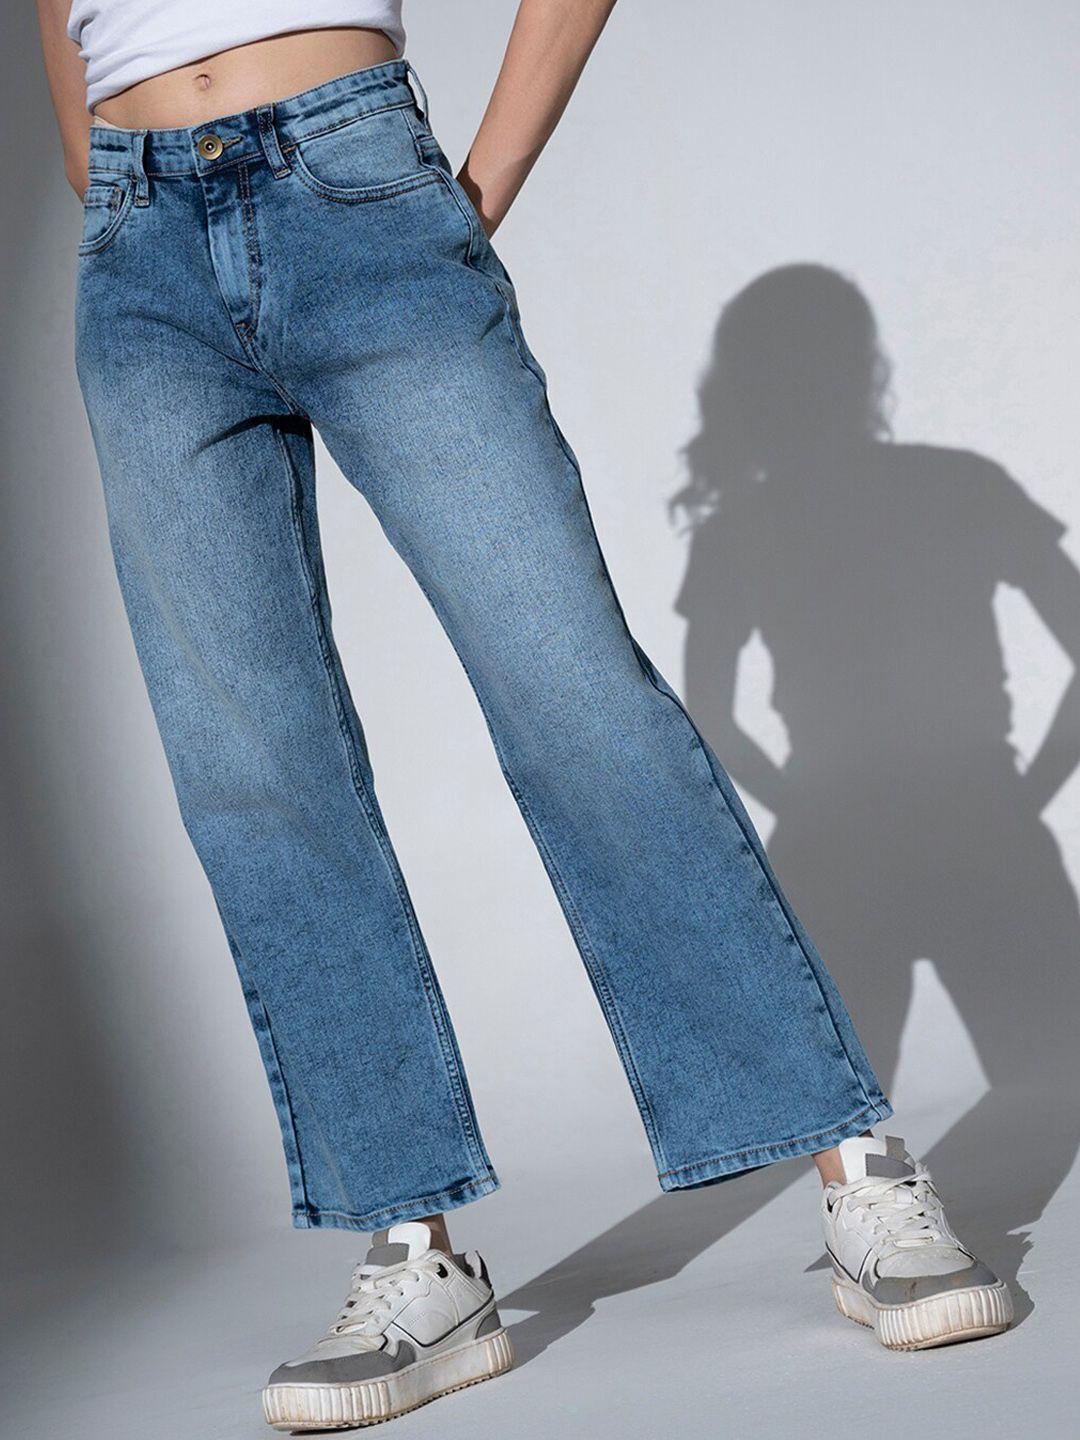 hubberholme women high-rise cotton jeans